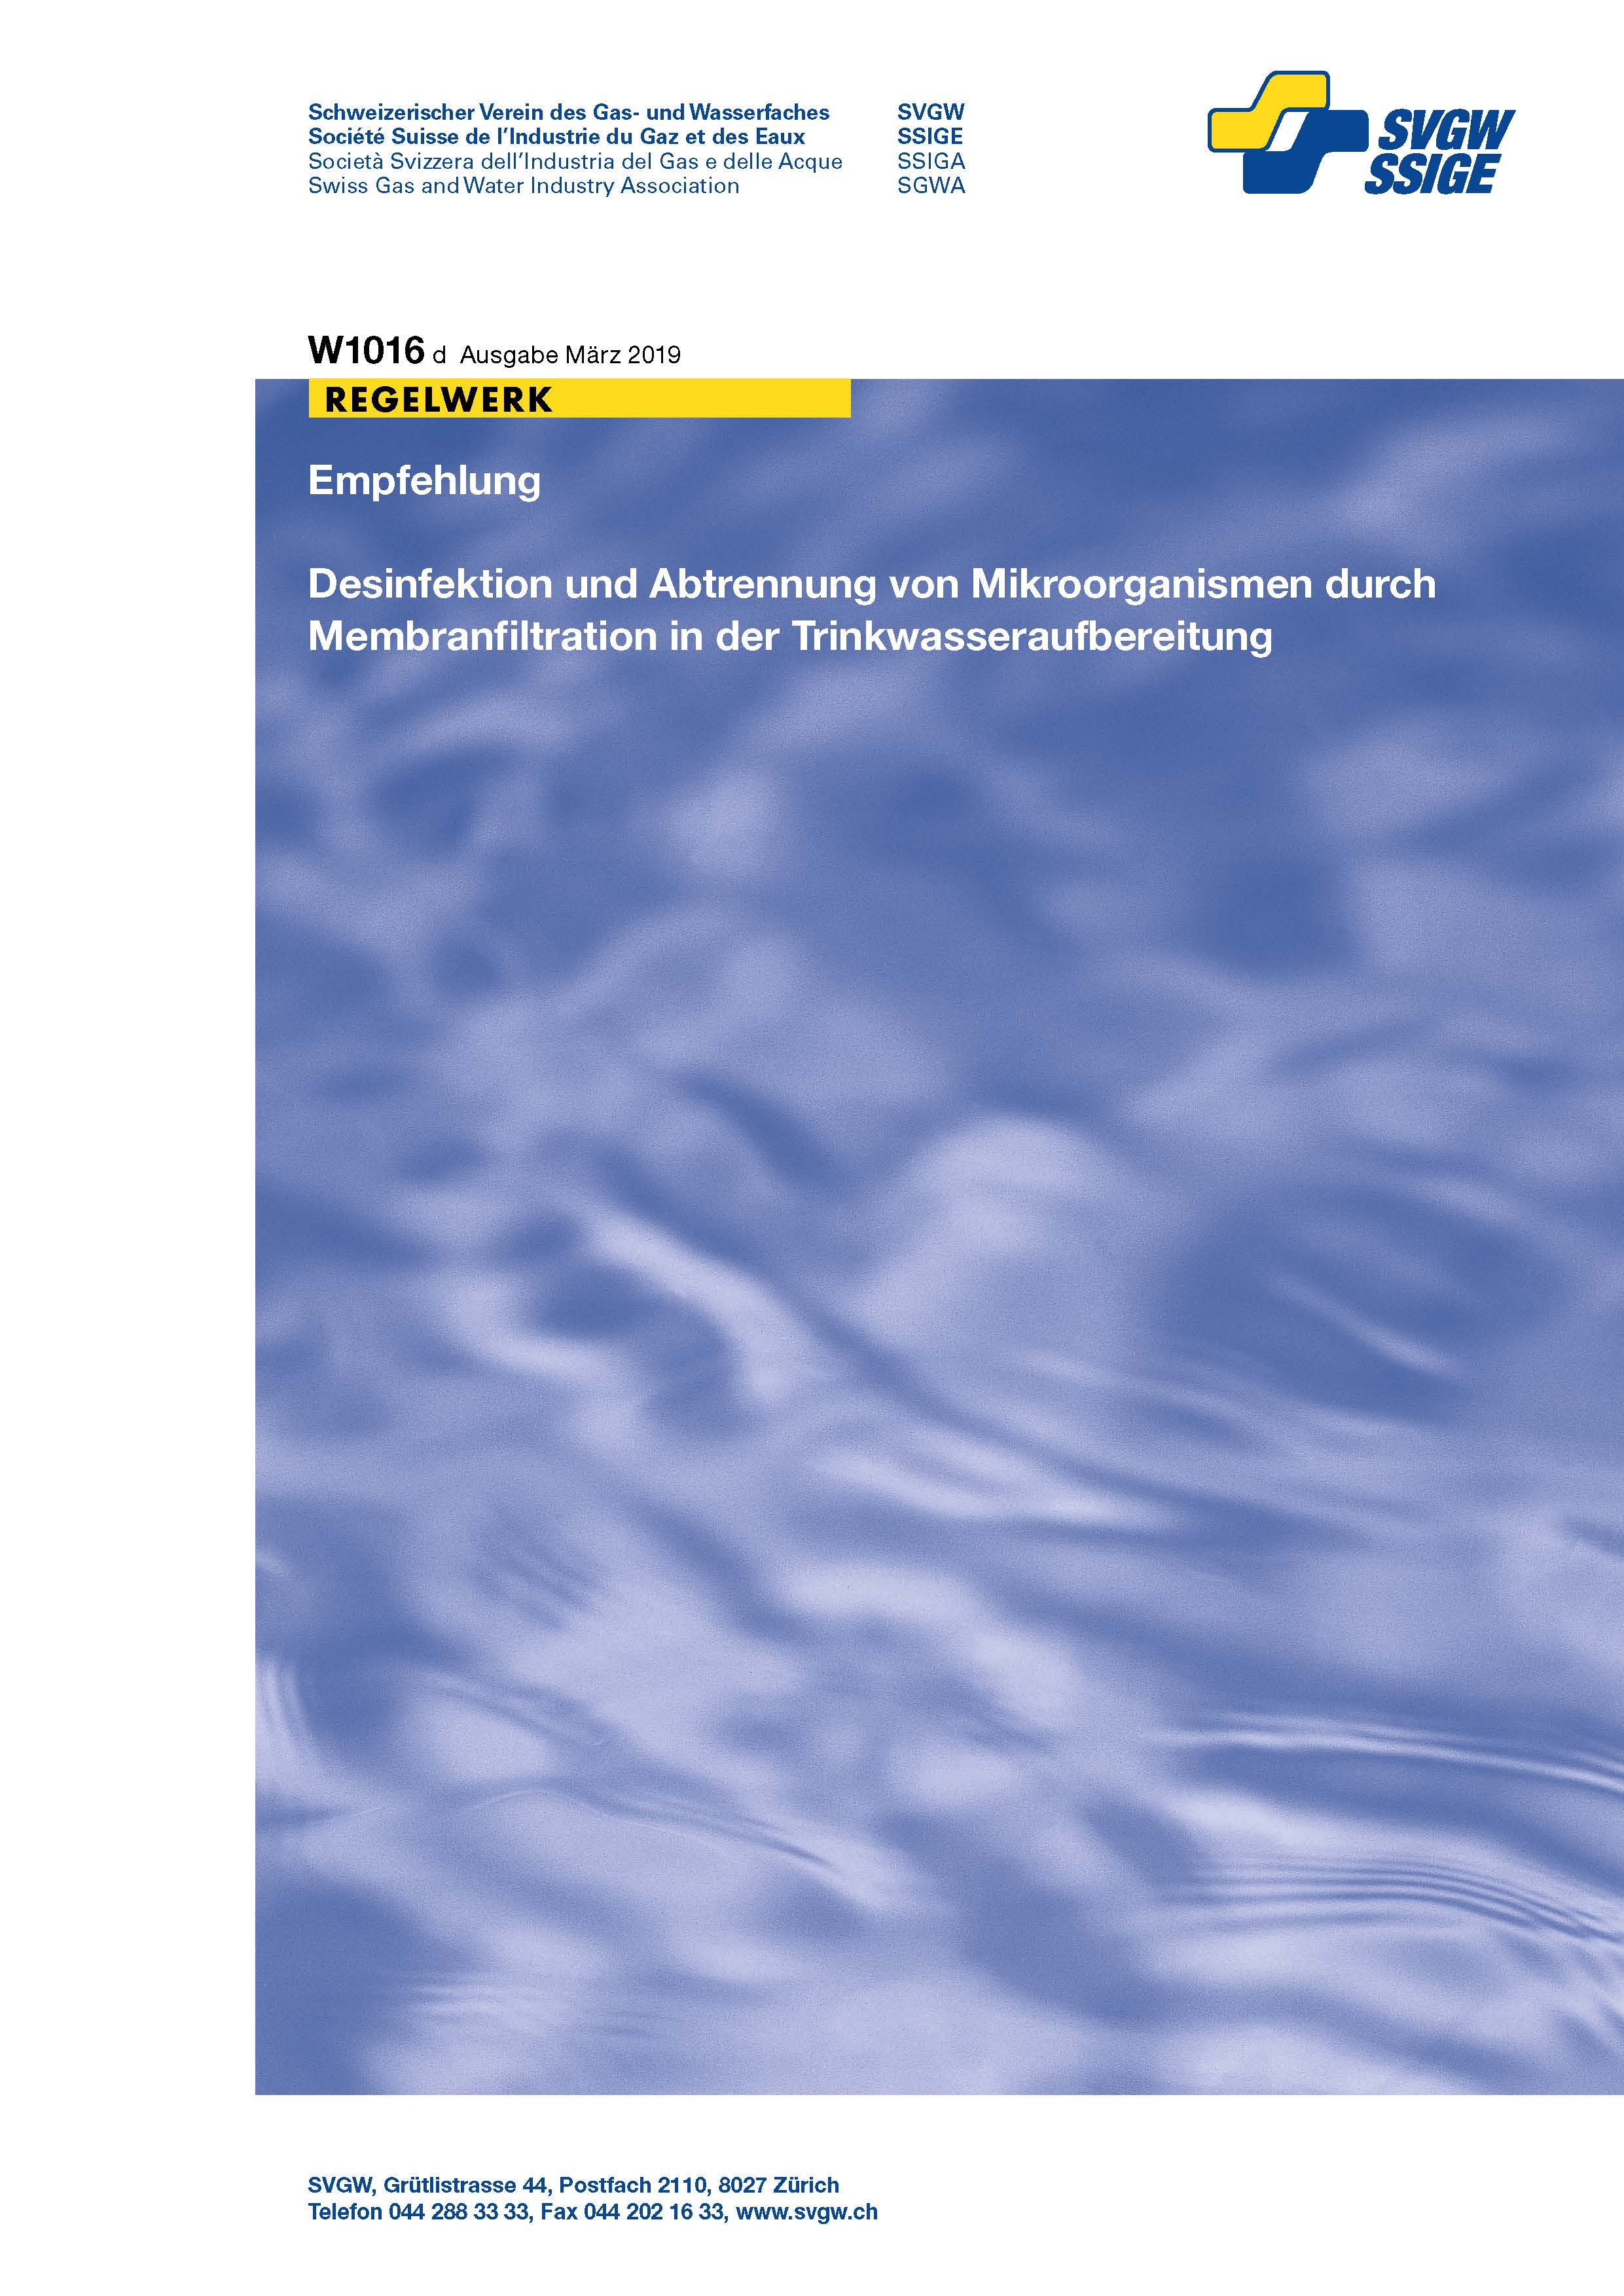 W1016 d Empfehlung; Desinfektion und Abtrennung von Mikroorganismen durch Membranfiltration in der Trinkwasseraufbereitung